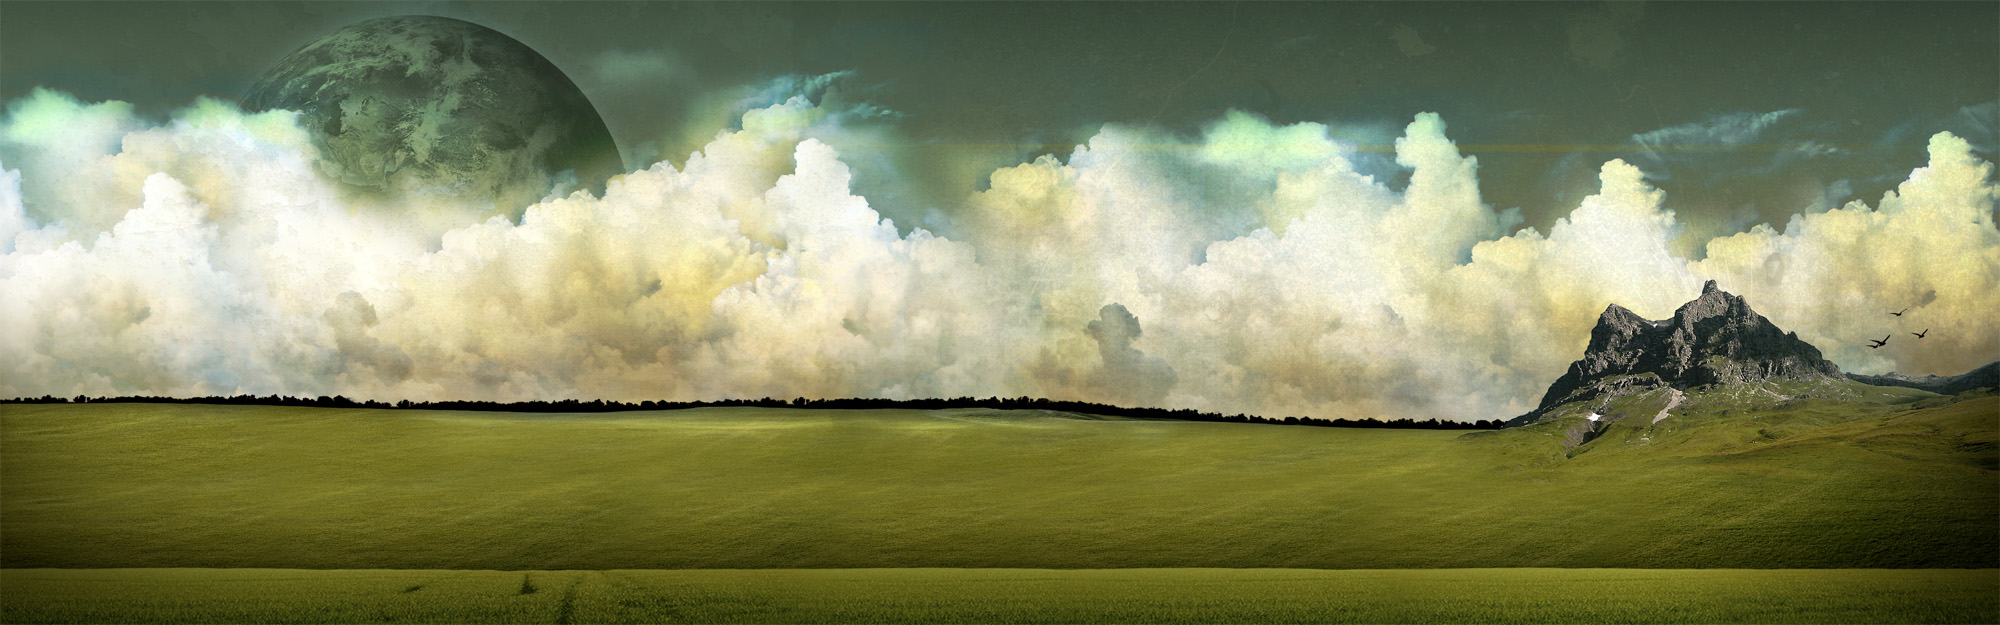 Moon shining through clouds in a beautiful HD desktop wallpaper